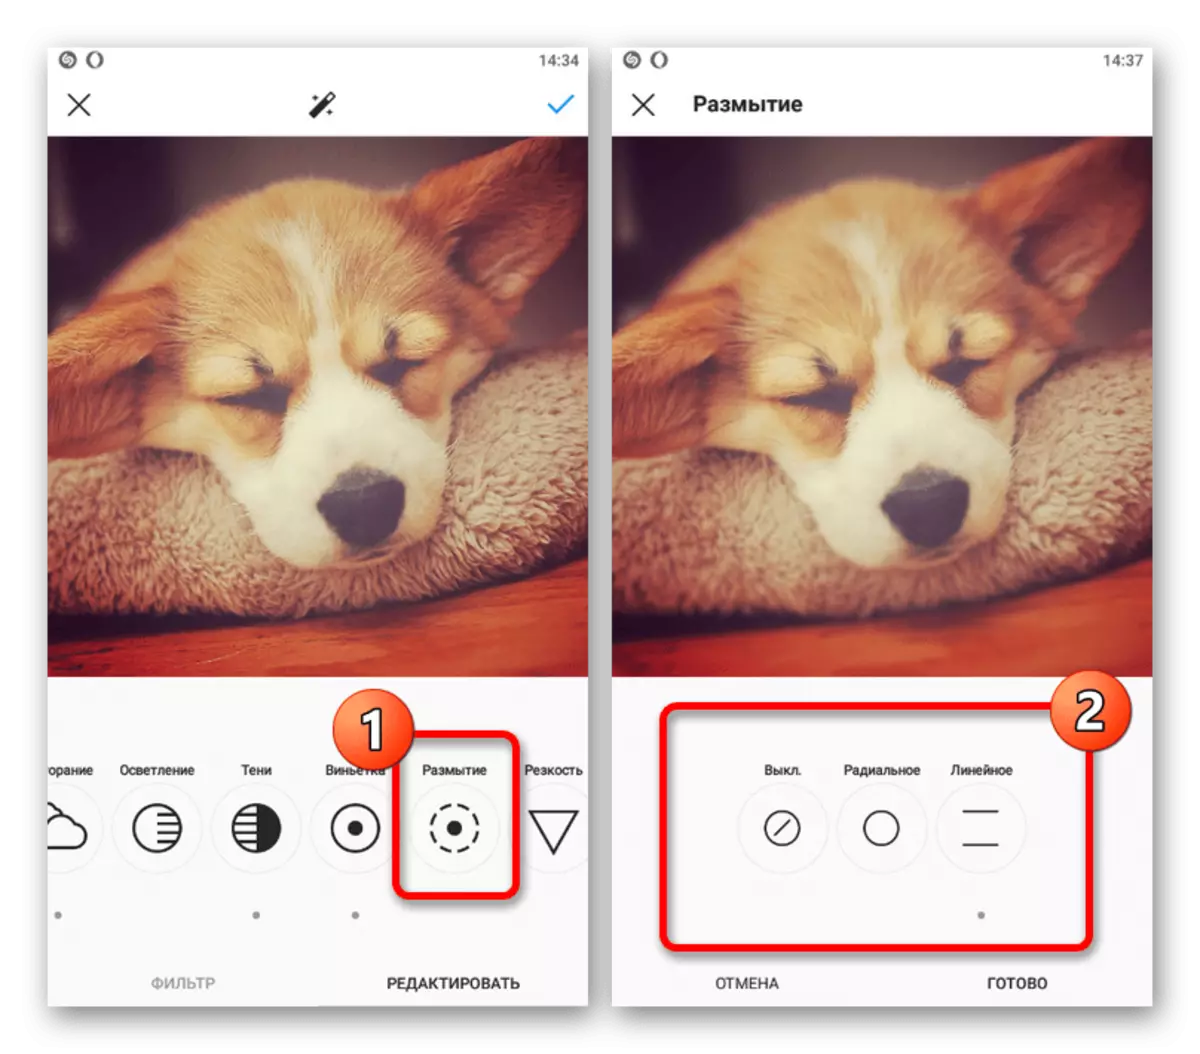 Намунаи илова кардани Blur ба тасвир дар барномаи мобилии Instagram